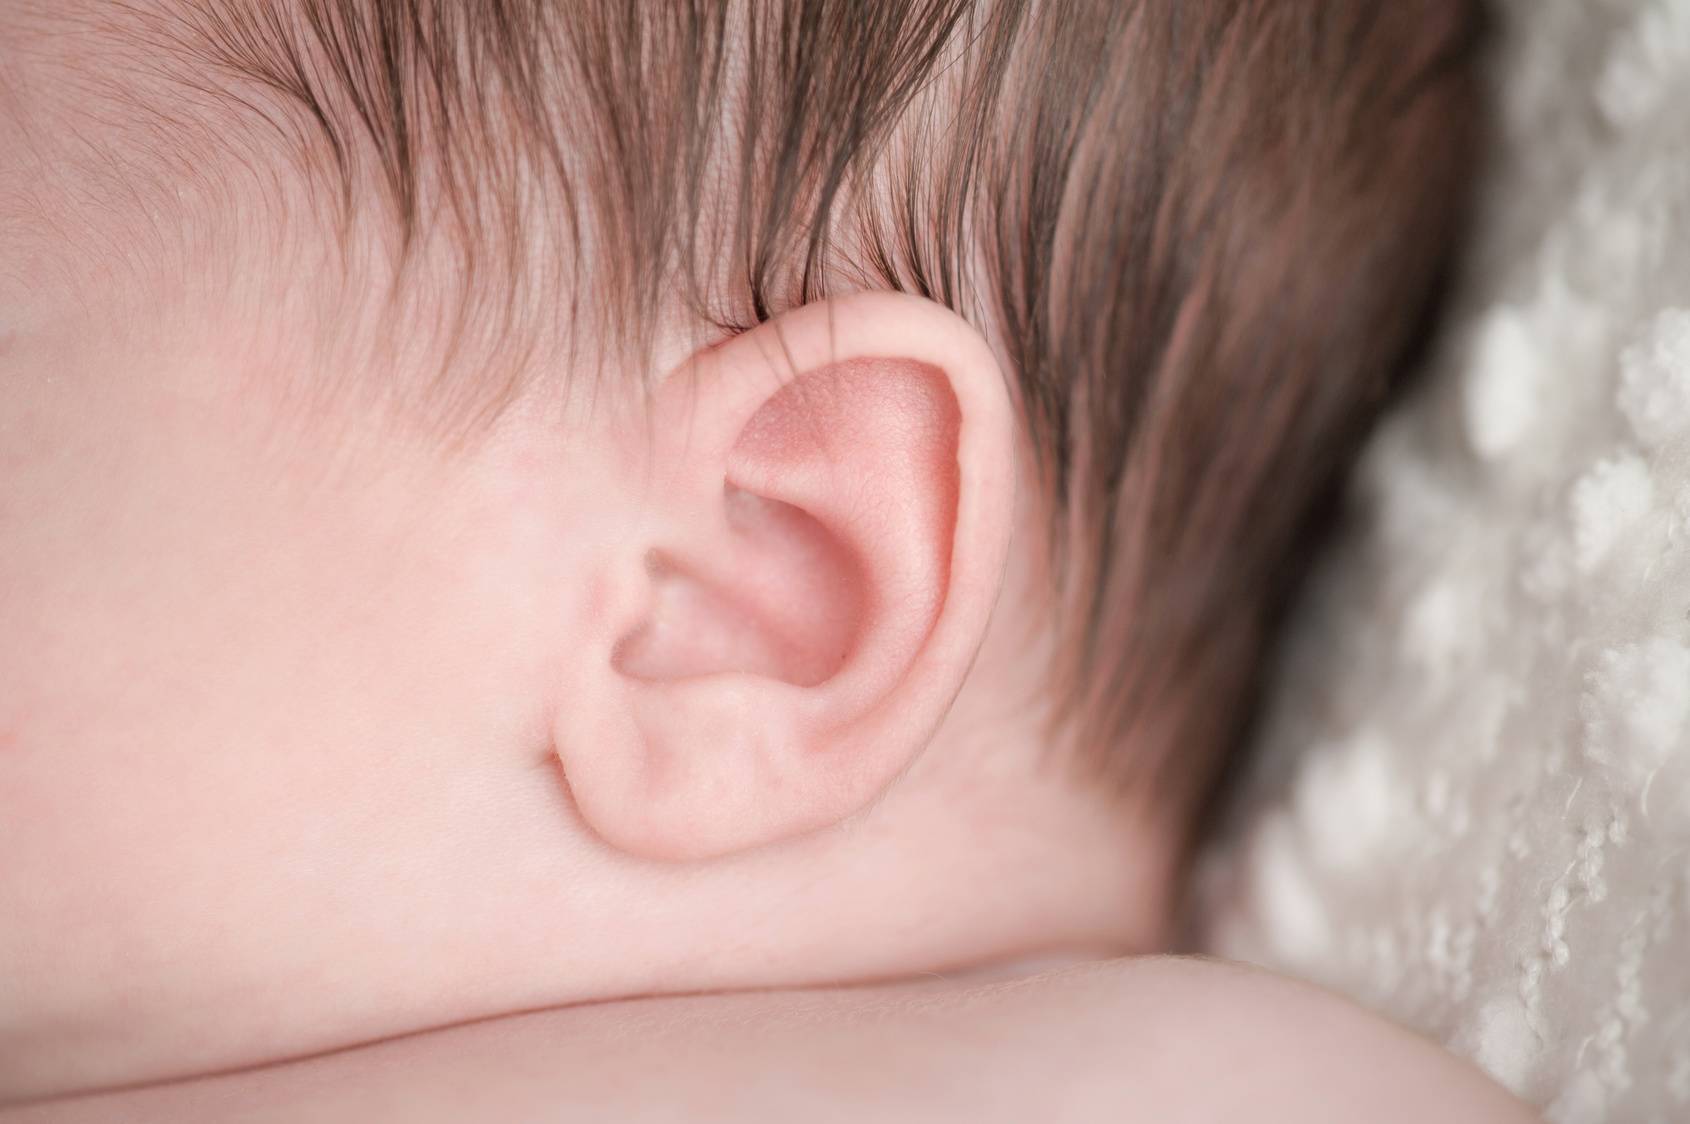 Травмы уха у детей - симптомы болезни, профилактика и лечение травм уха у детей, причины заболевания и его диагностика на eurolab